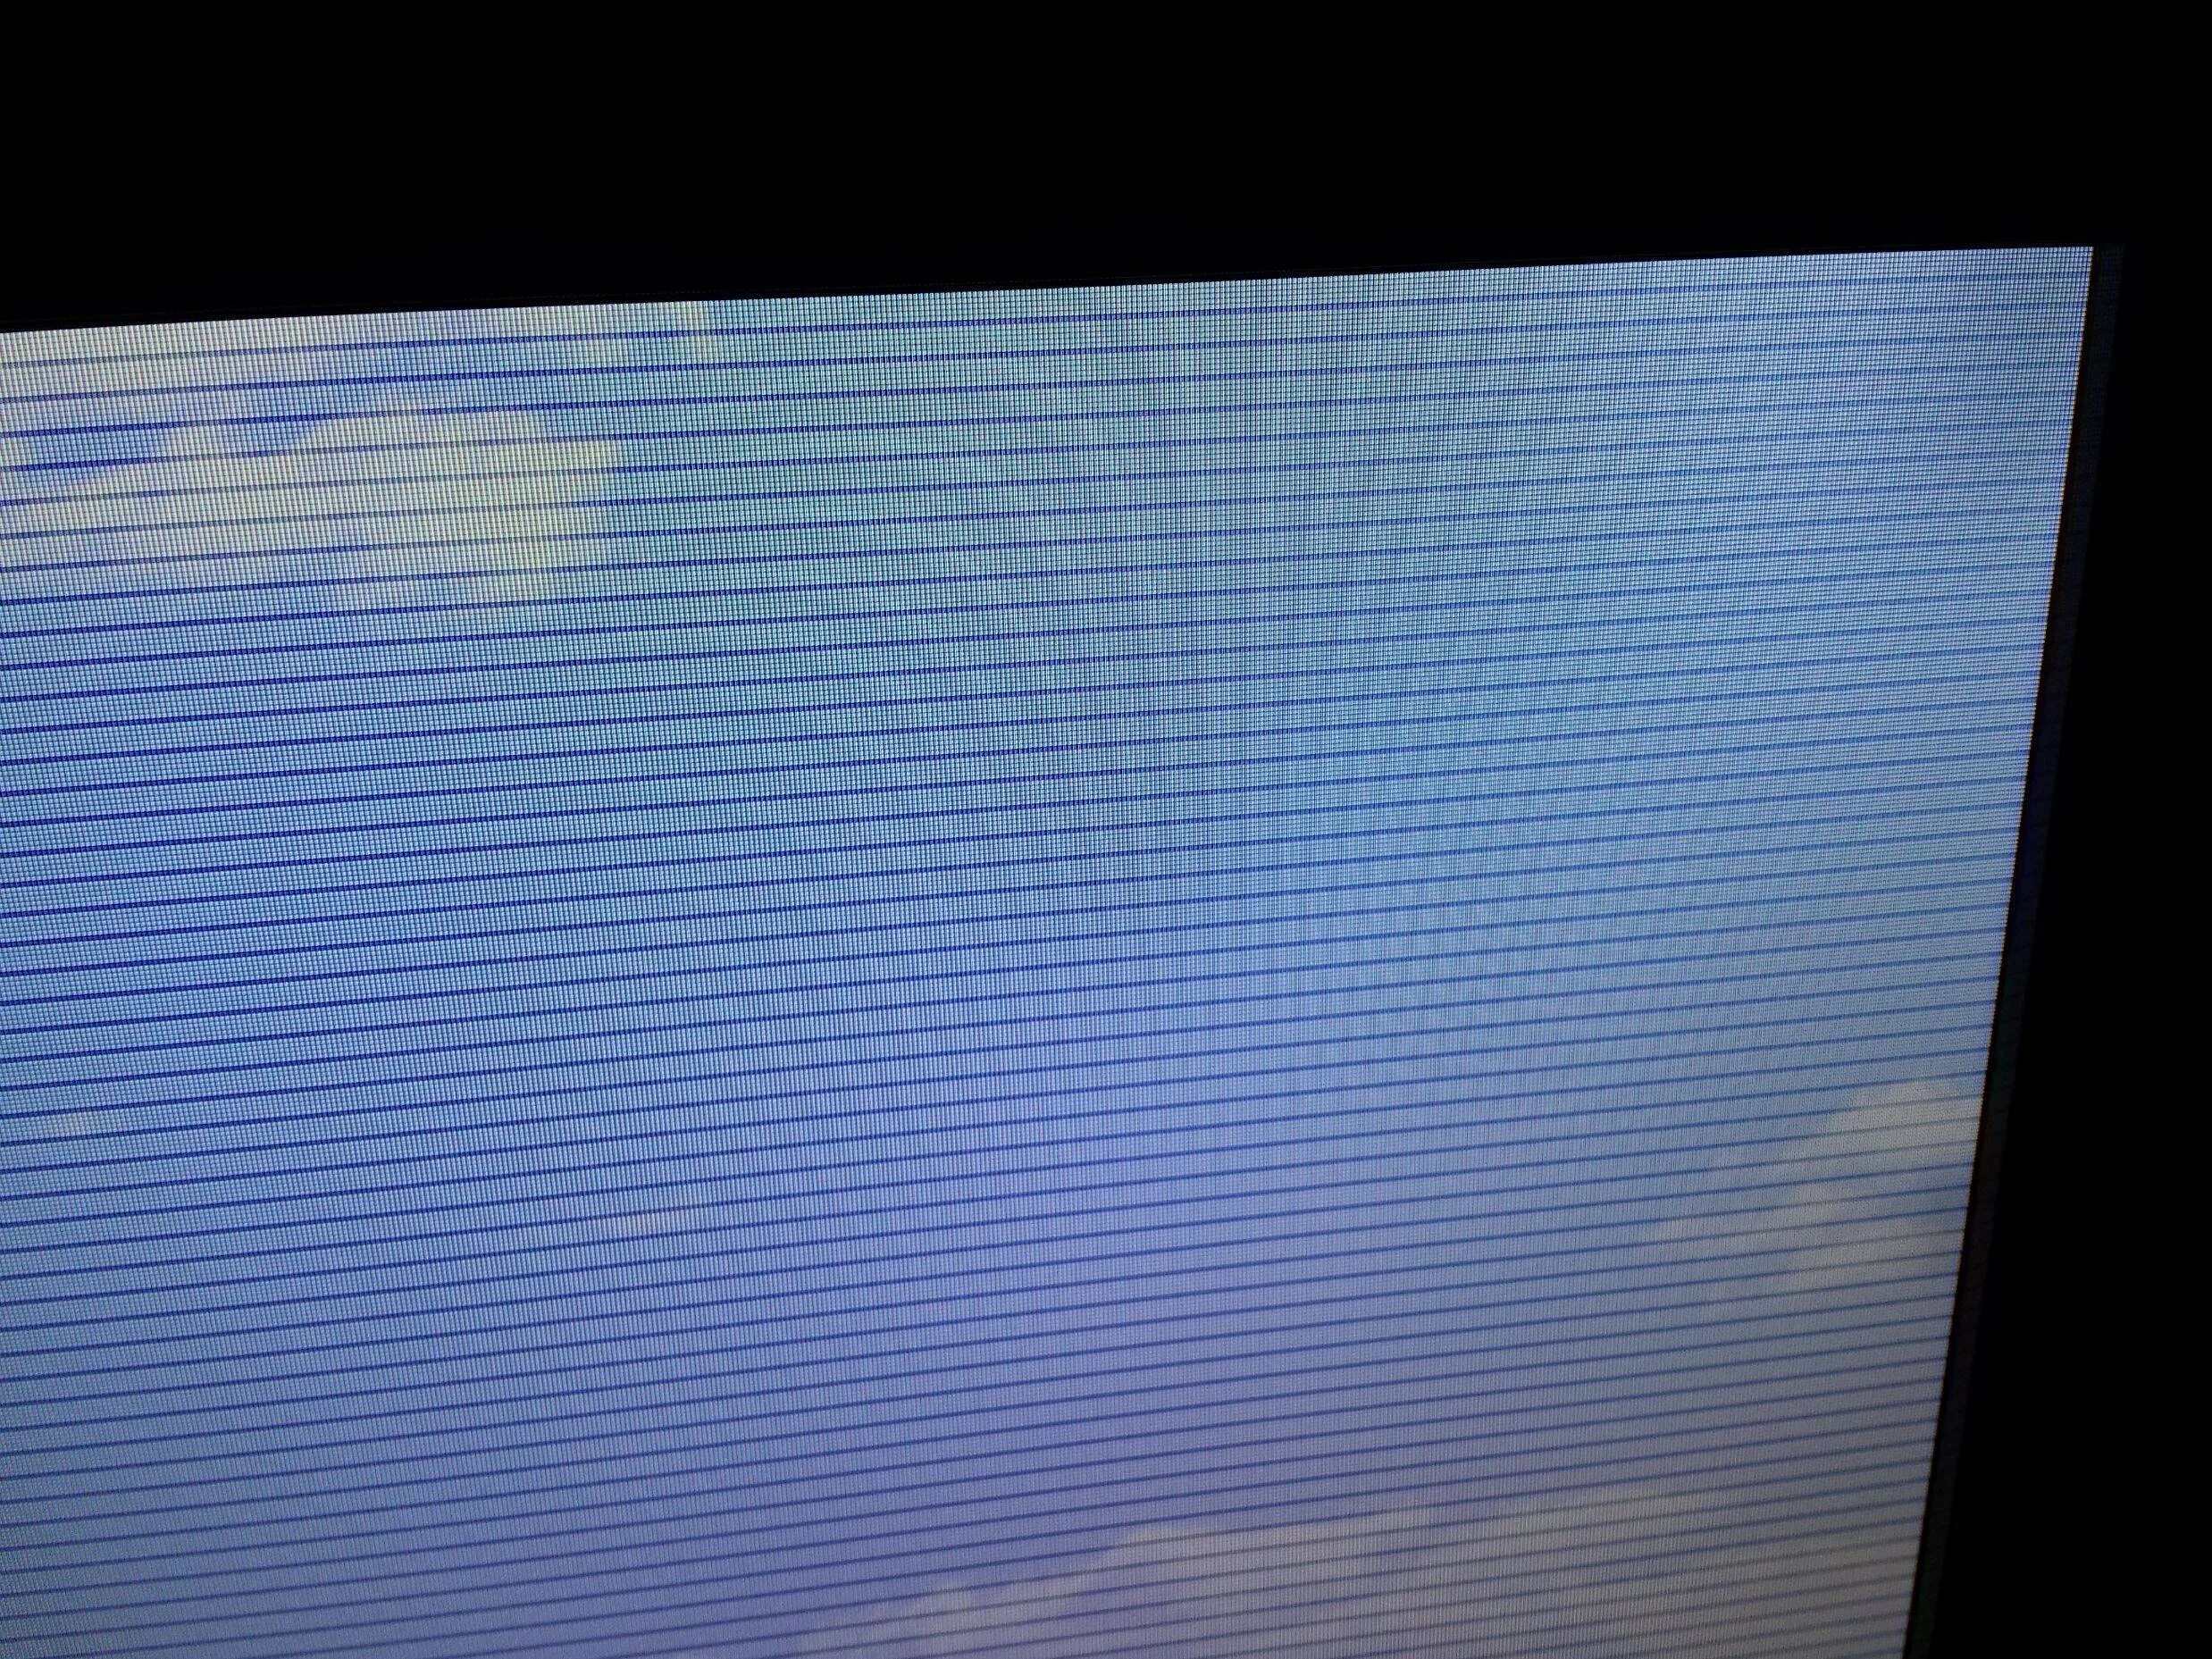 Телевизор самсунг рябит экран. Телевизор Филипс горизонтальные полосы на экране. Lta400hm15 горизонтальные полосы. Чёрные вертикальные полосы на экране телевизора самсунг.